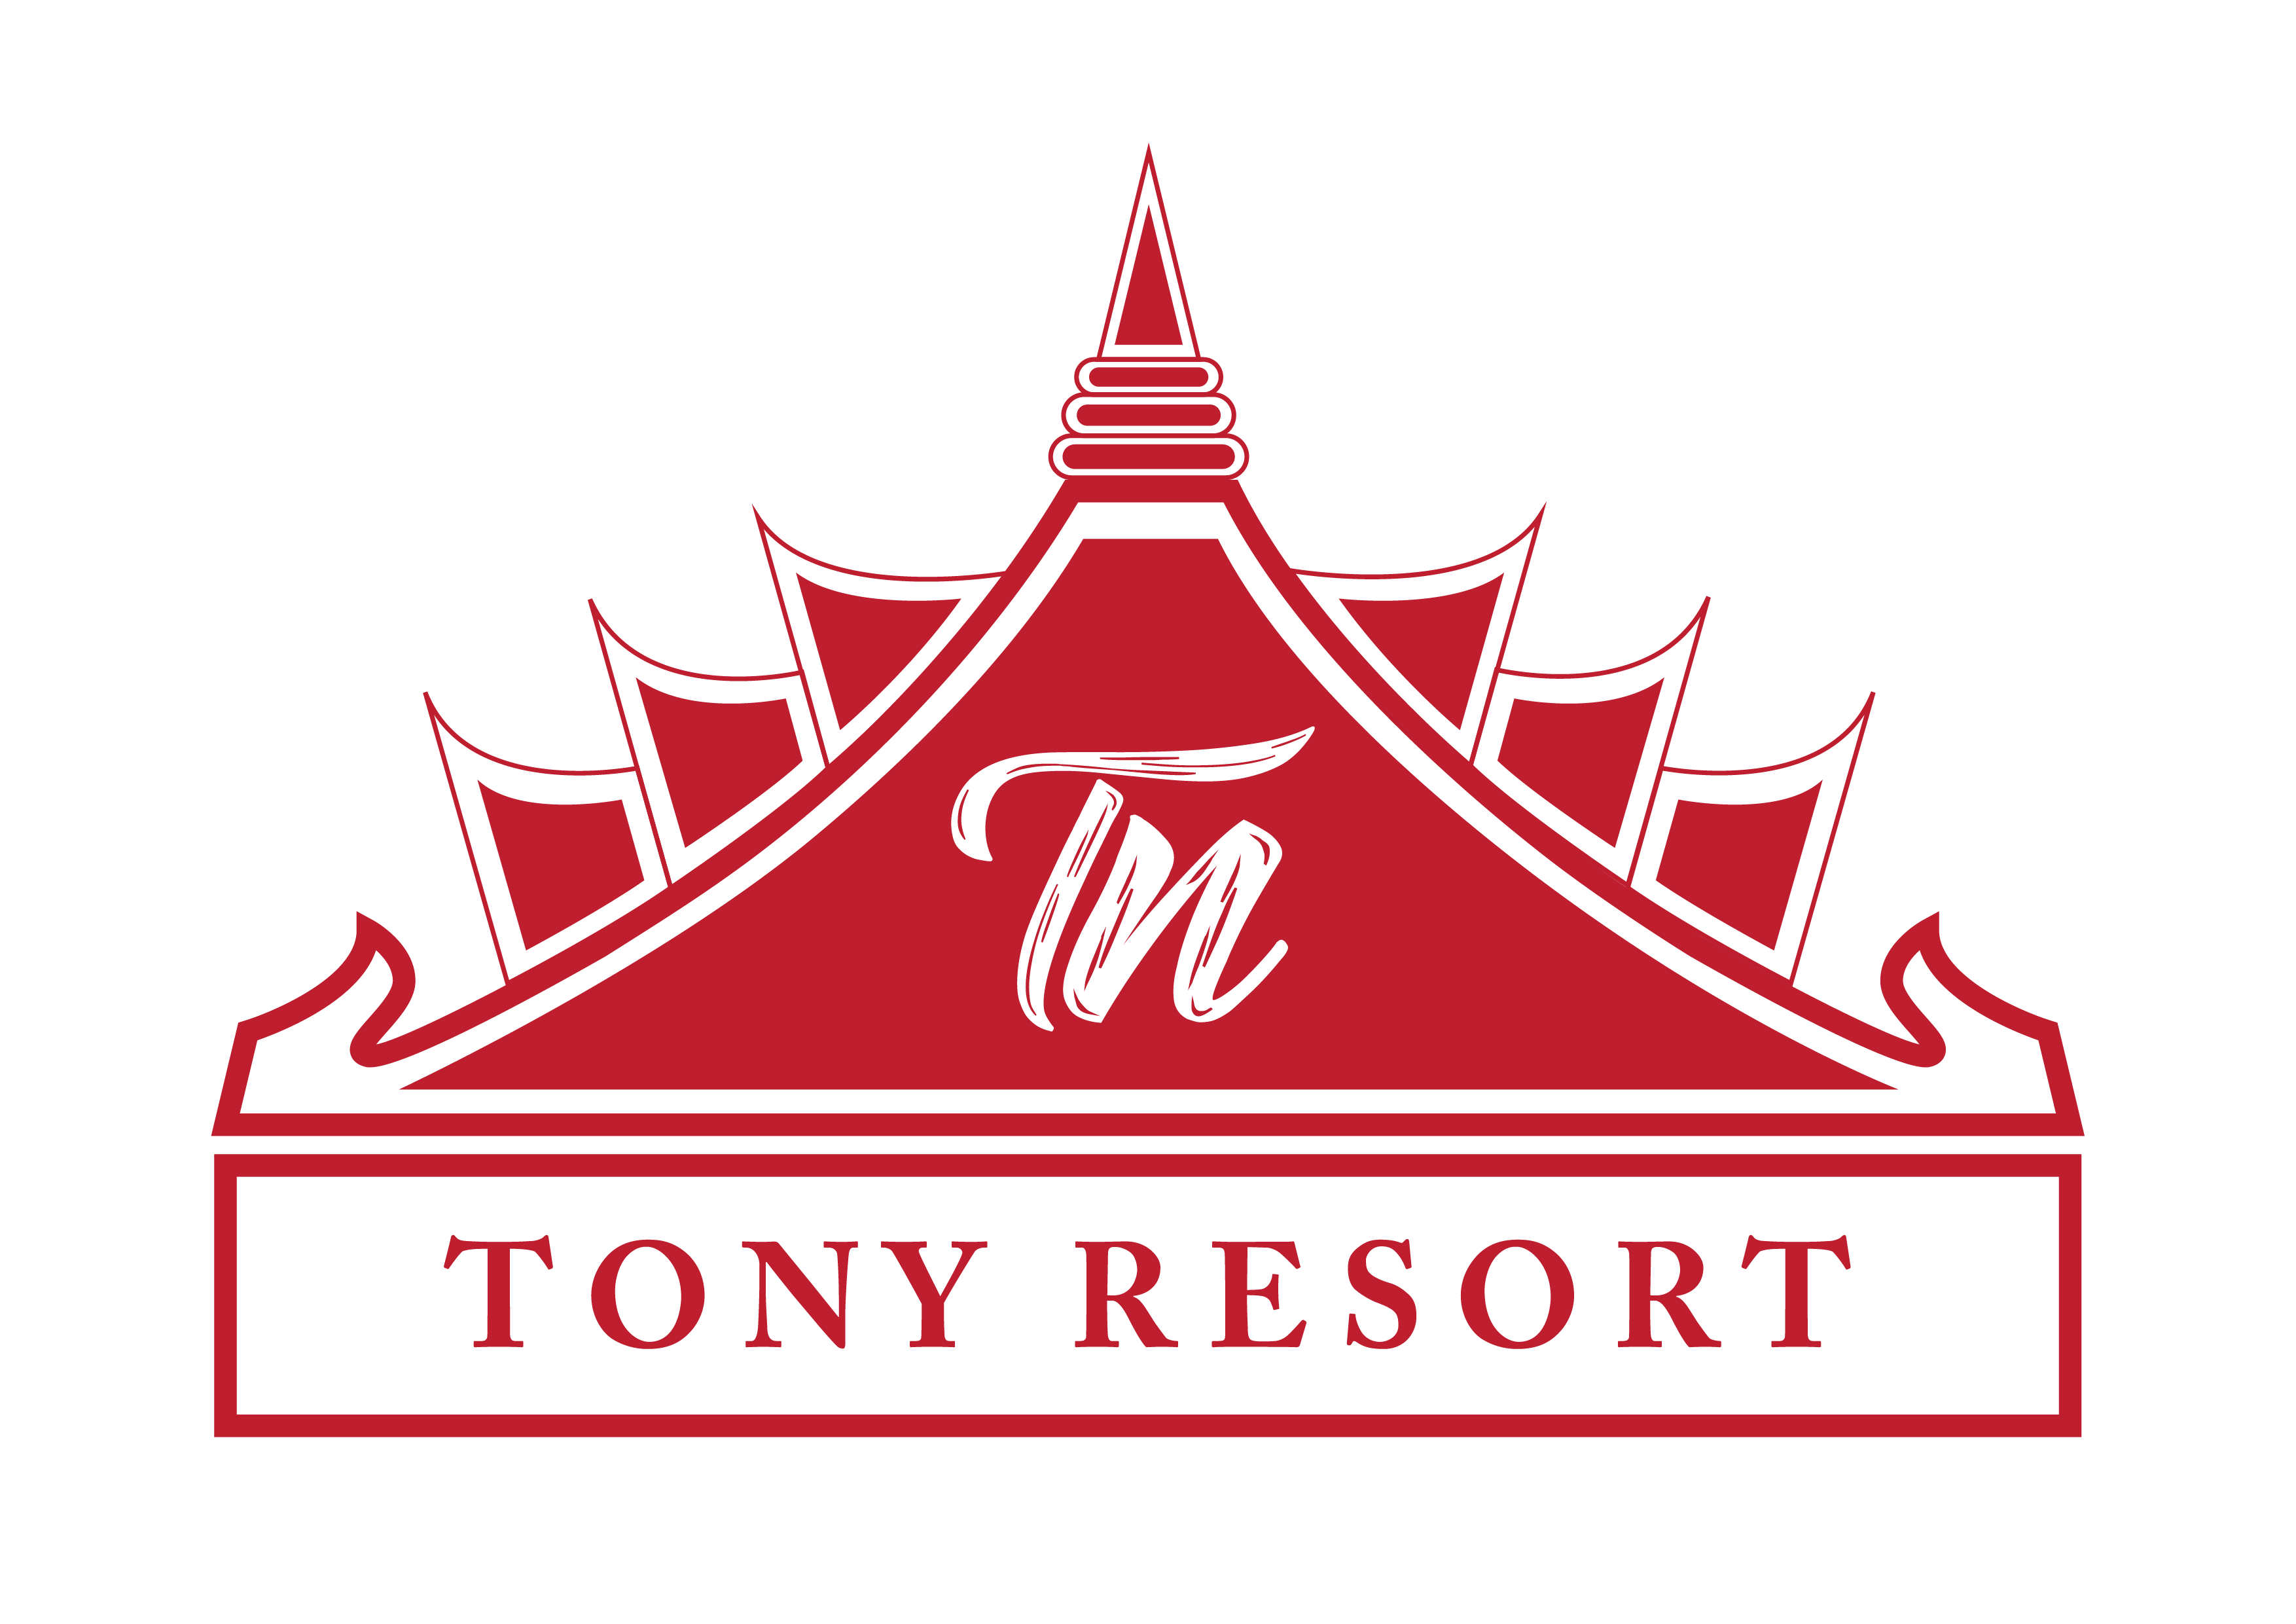 Tony Resort